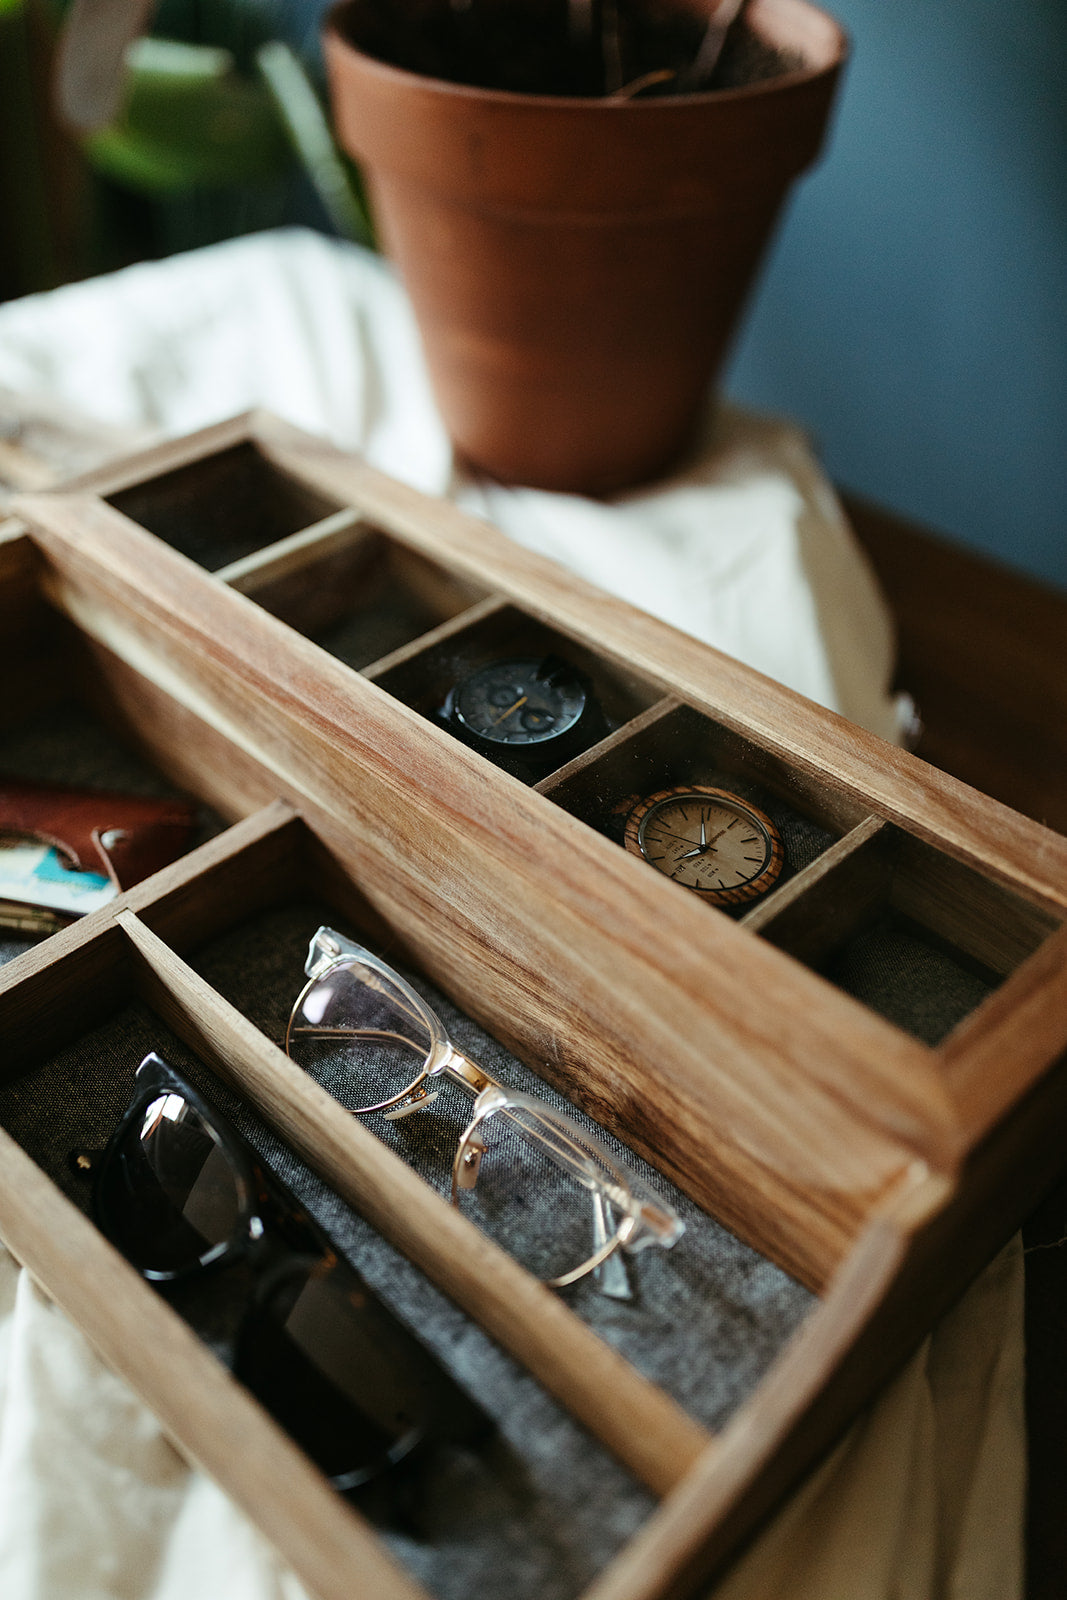 Acacia Valet Watch Box -  5 Compartment Glass Watch Box - Men's Valet - Watch Storage - Watch Organizer